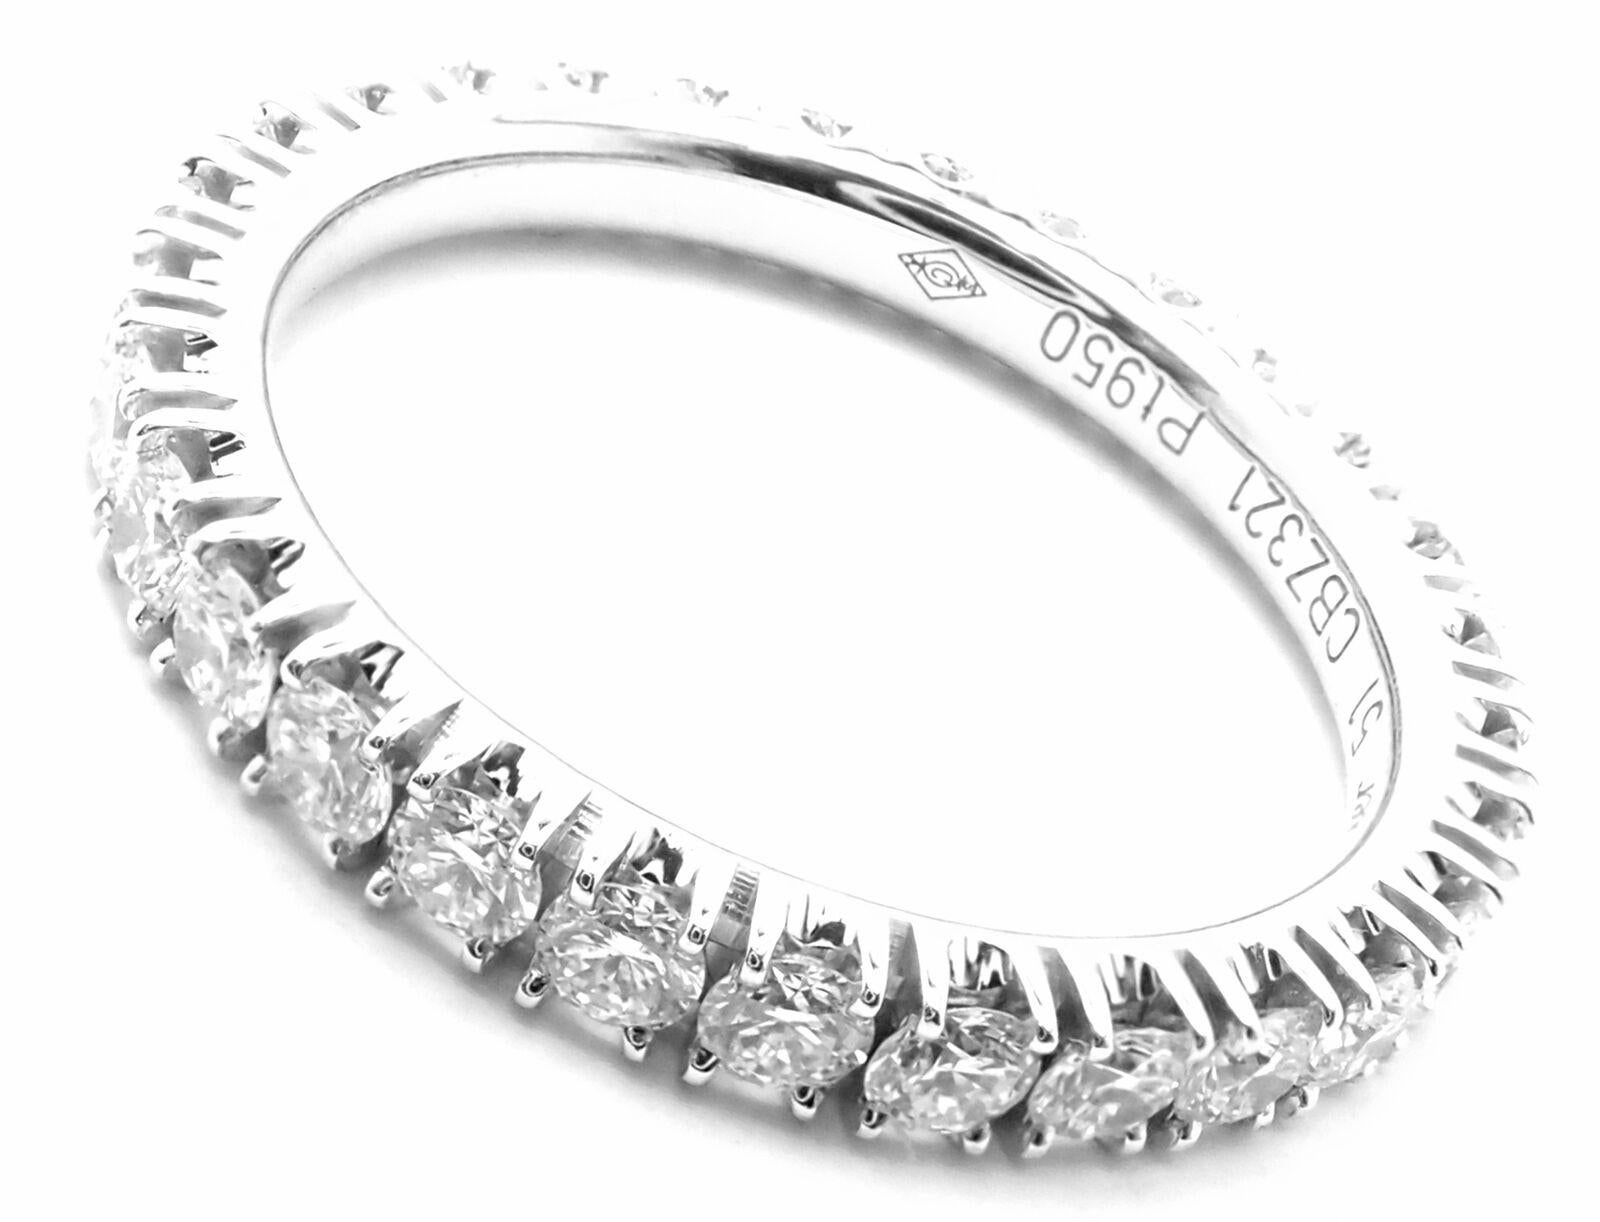 Platin Diamant Étincelle De Cartier Eternity Band Ring von Cartier.
Mit 29 runden Diamanten im Brillantschliff VVS1 Reinheit, E Farbe Gesamtgewicht ca. 0,94ct 
Einzelheiten:
Größe: Europäisch 51, US 5.75
Gewicht: 3,2 Gramm
Breite: 2.6 mm
Gestempelte